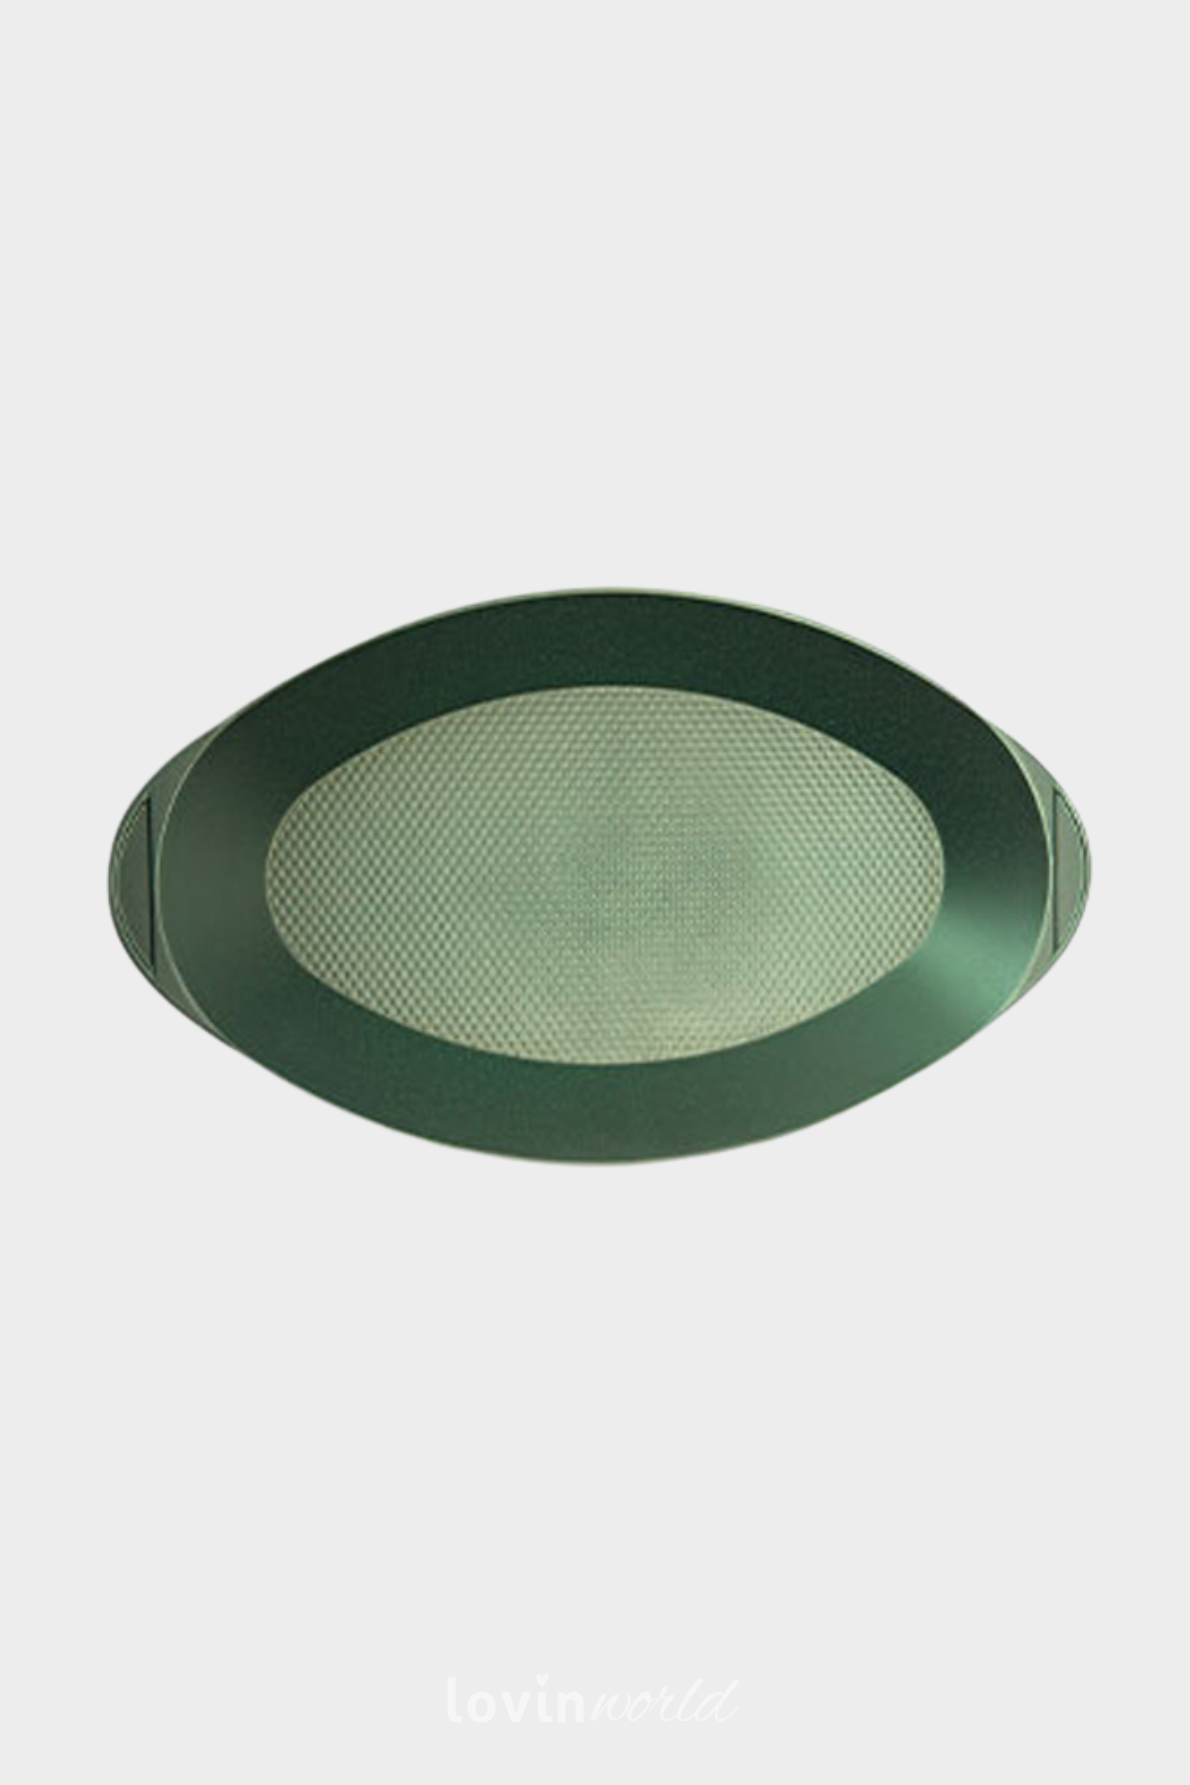 Pesciera ovale Dr. Green in alluminio antiaderente 46x26 cm.-2